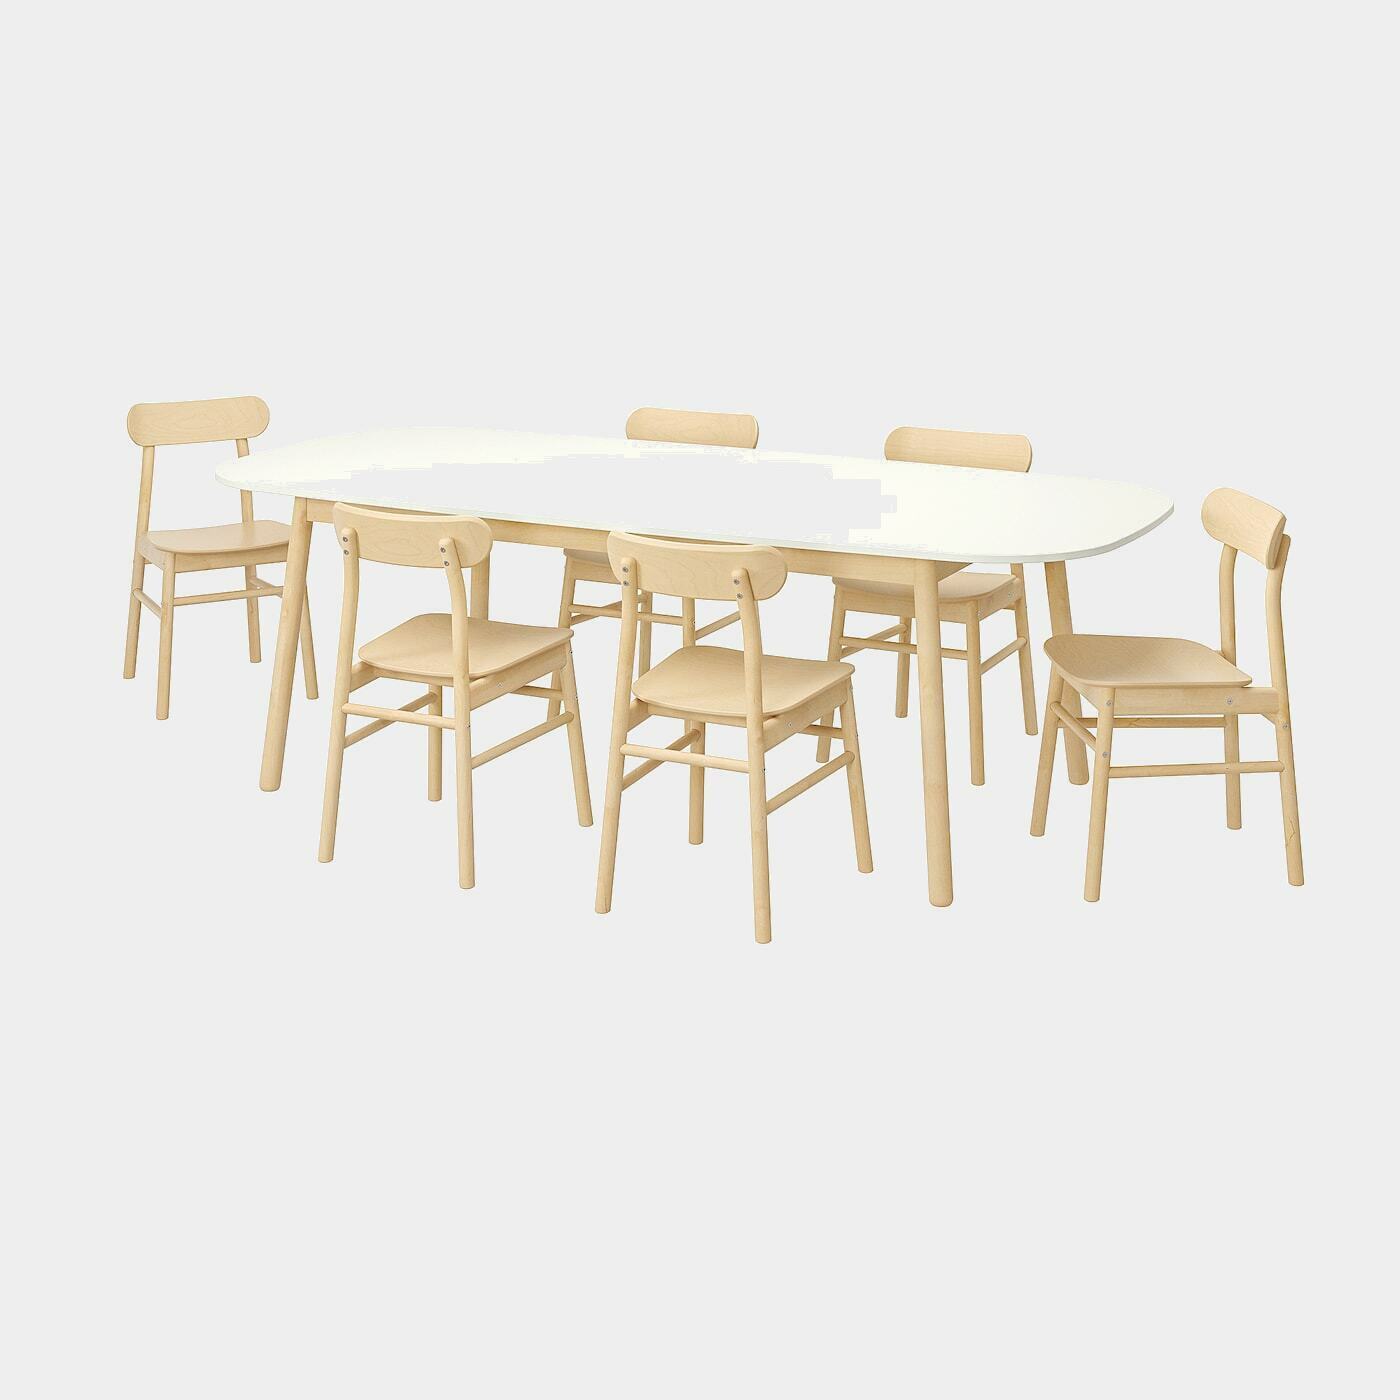 VEDBO / RÖNNINGE Tisch und 6 Stühle  -  - Möbel Ideen für dein Zuhause von Home Trends. Möbel Trends von Social Media Influencer für dein Skandi Zuhause.